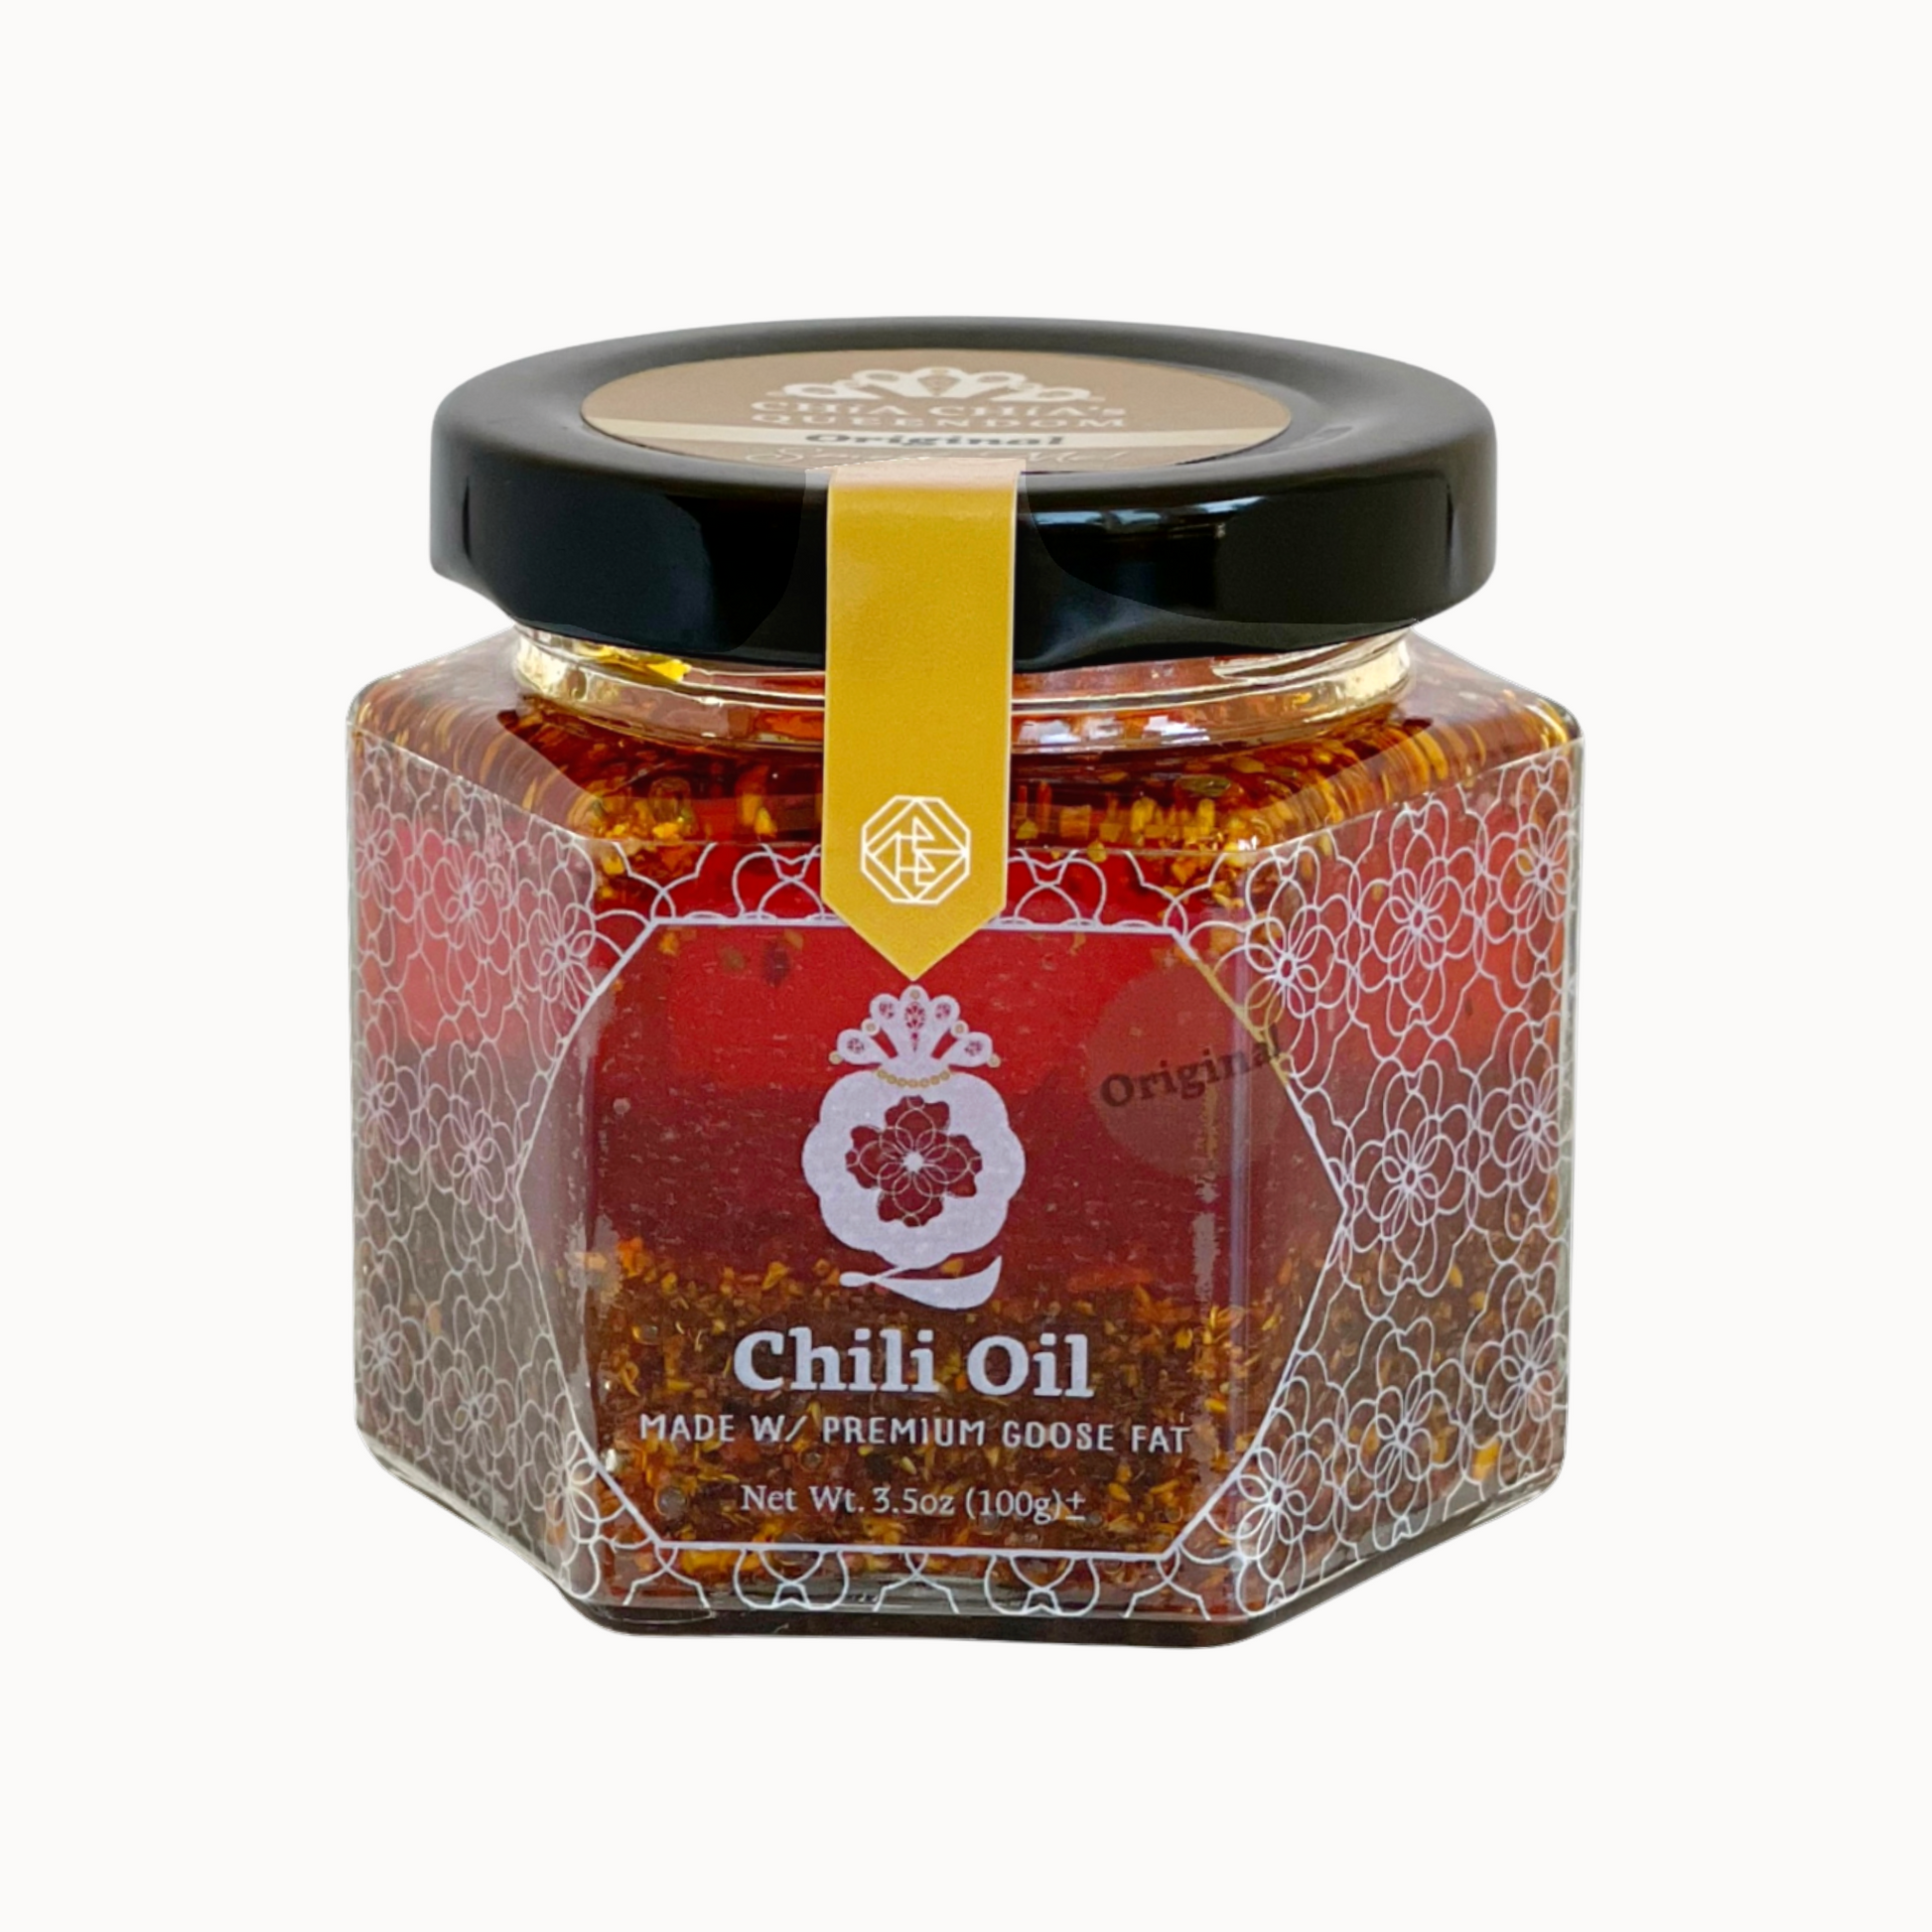 Original Chili Oil made with Premium Goose Fat 100g – ChiaChia's Queendom